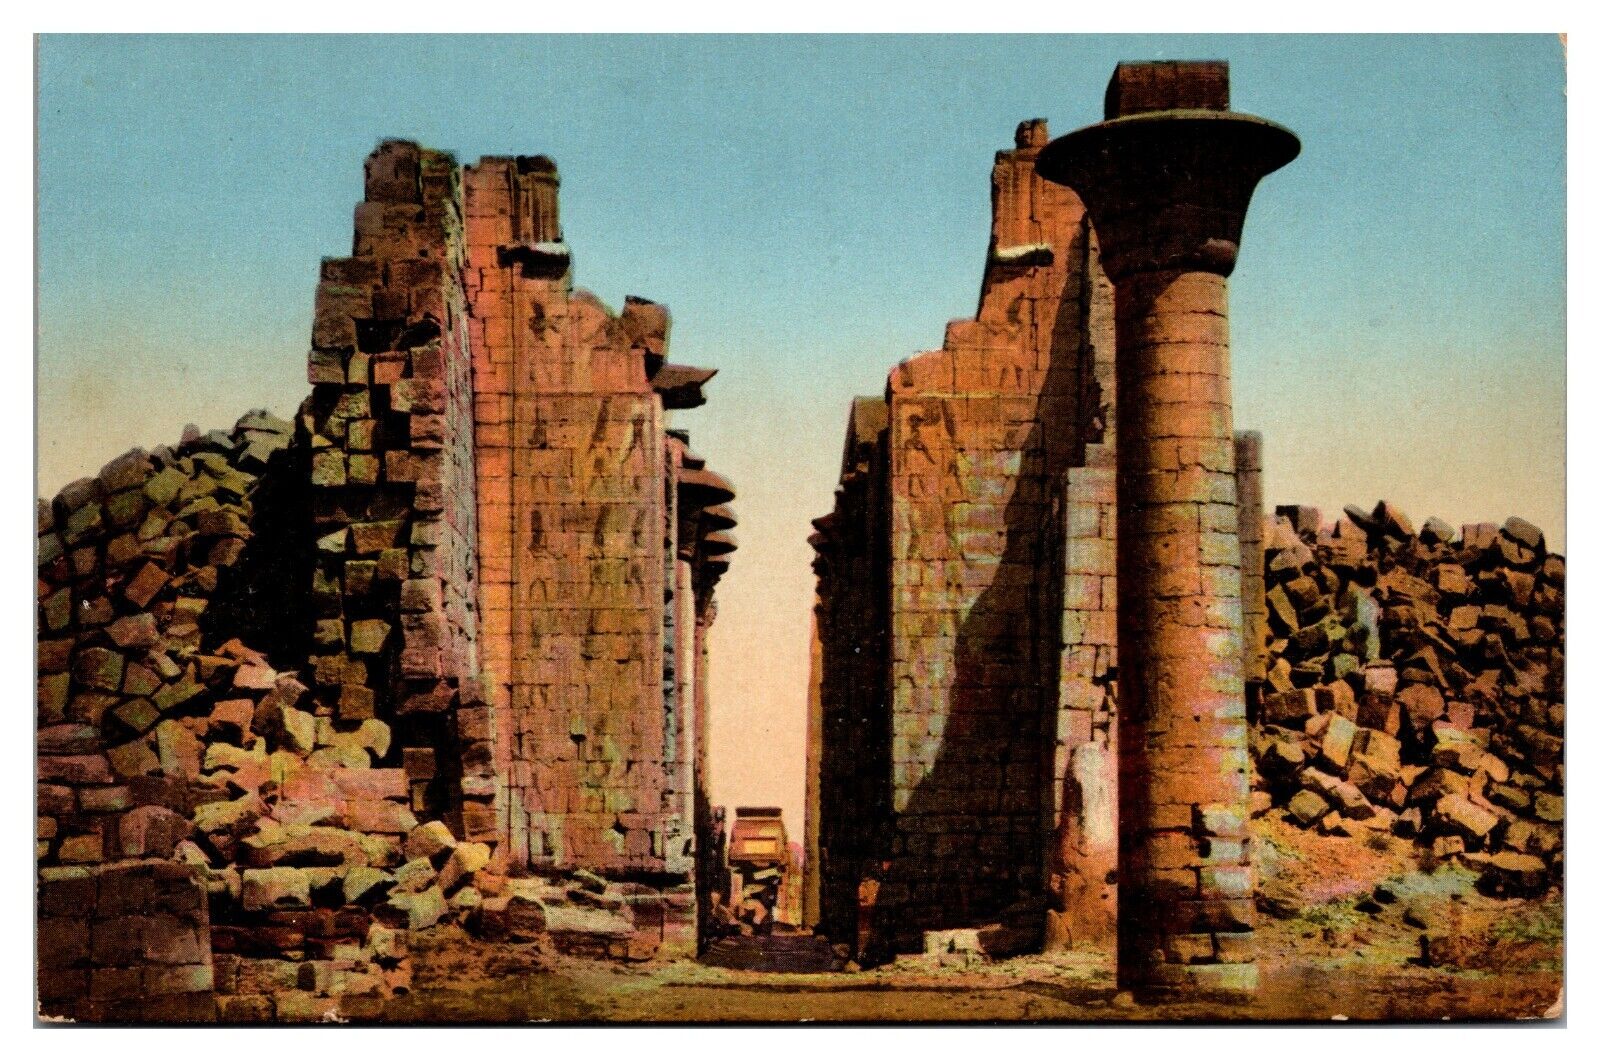 ANTQ Great Temple of Ammon, II Pylon, Karnak, Egypt Postcard